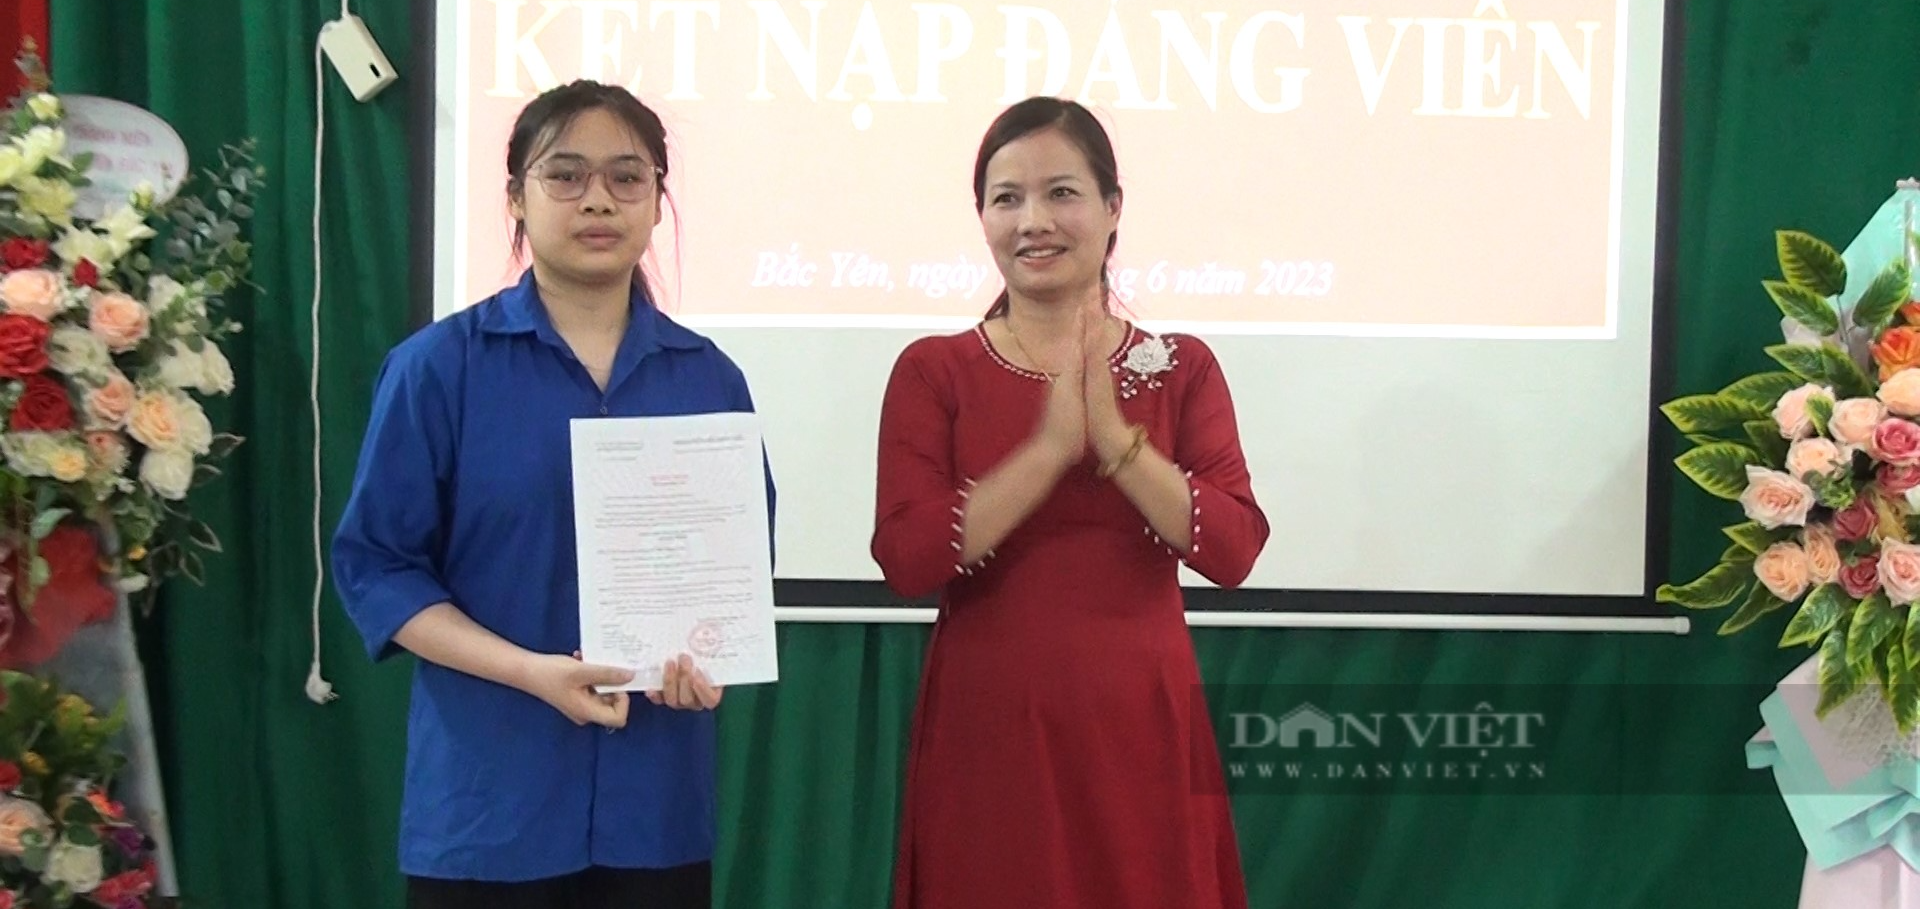 Học sinh THPT đầu tiên của huyện Bắc yên, tỉnh Sơn La được kết nạp Đảng - Ảnh 5.